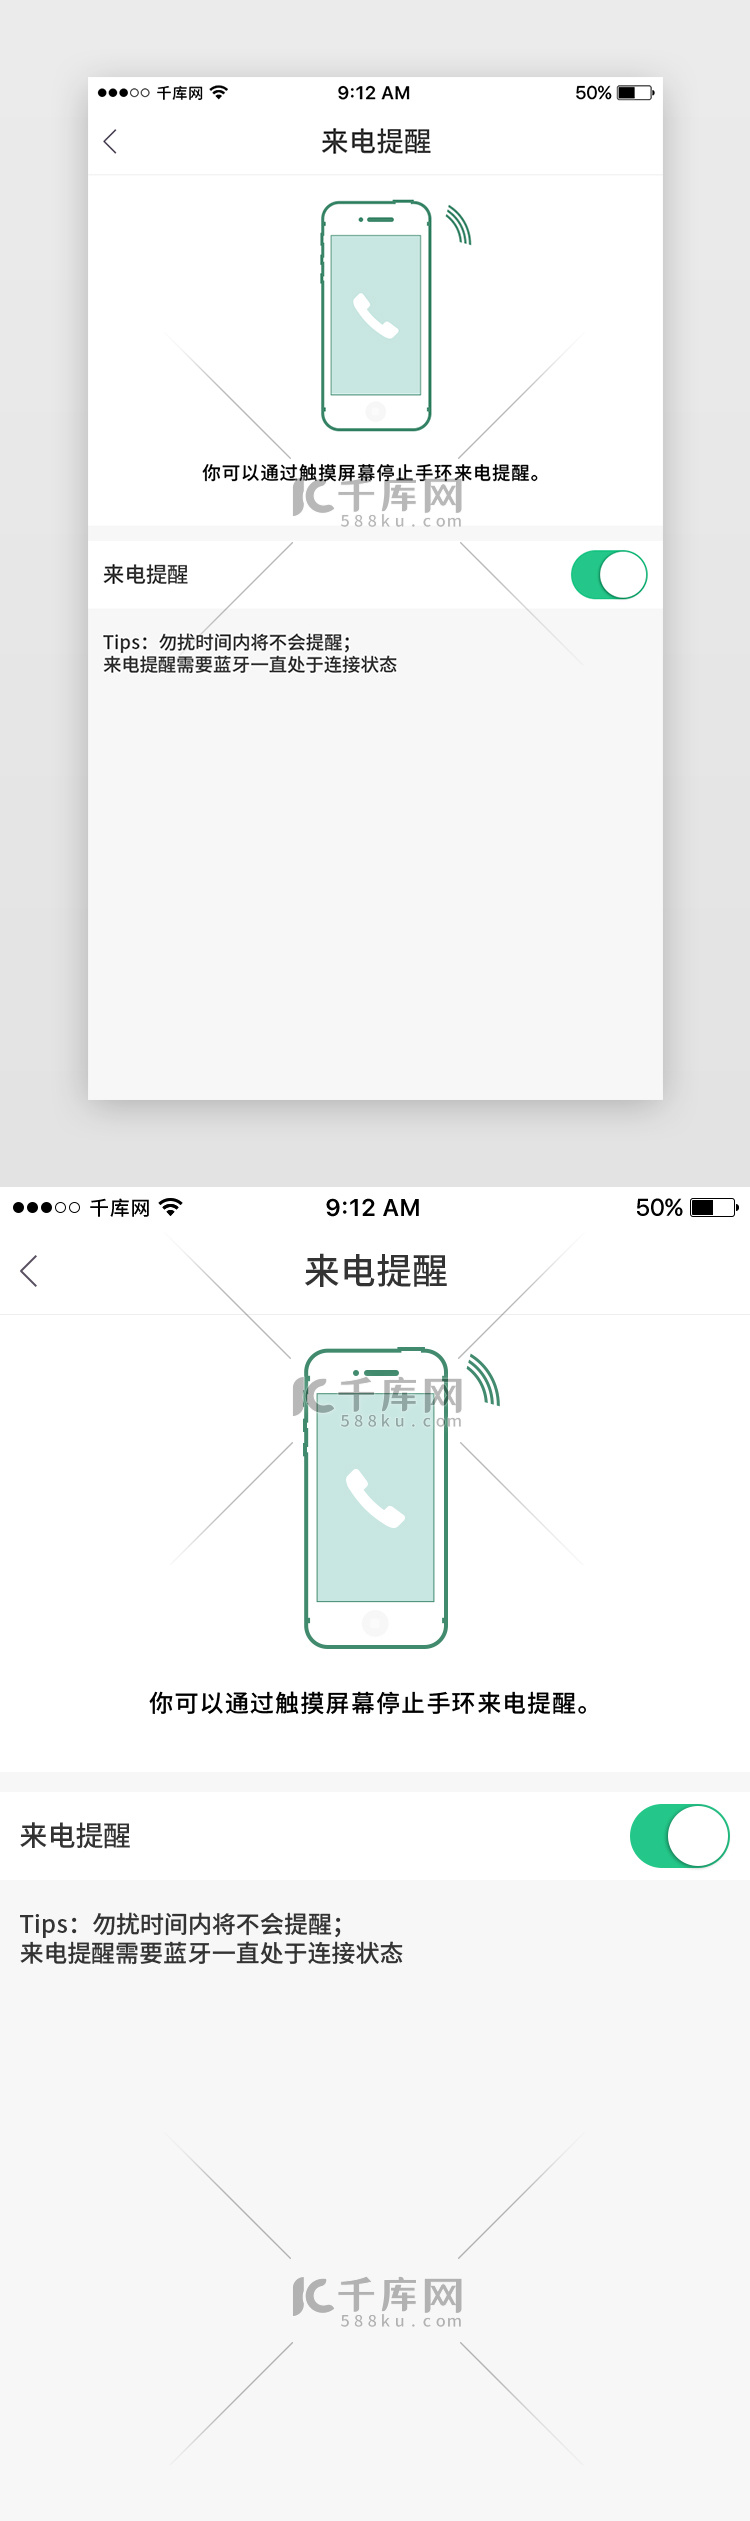 绿色运动手环App来电提醒页